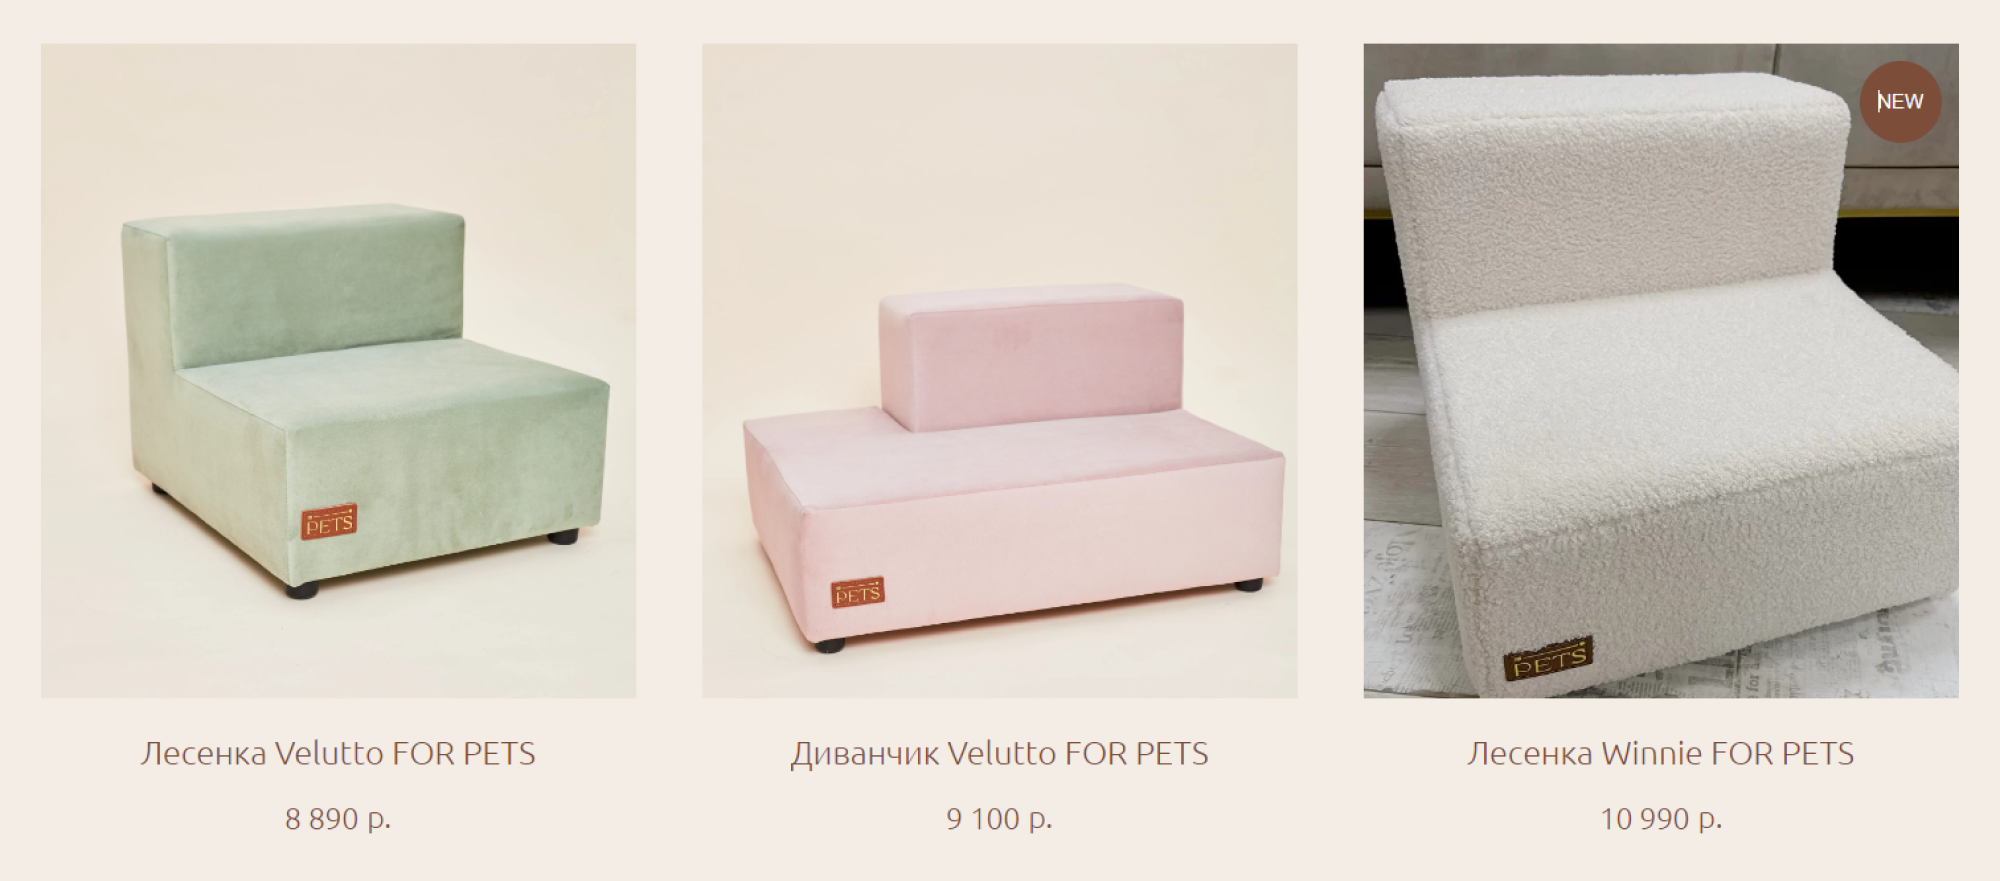 Такая мебель стоит дороже, но и выглядит более стильно. Источник: forpets.online